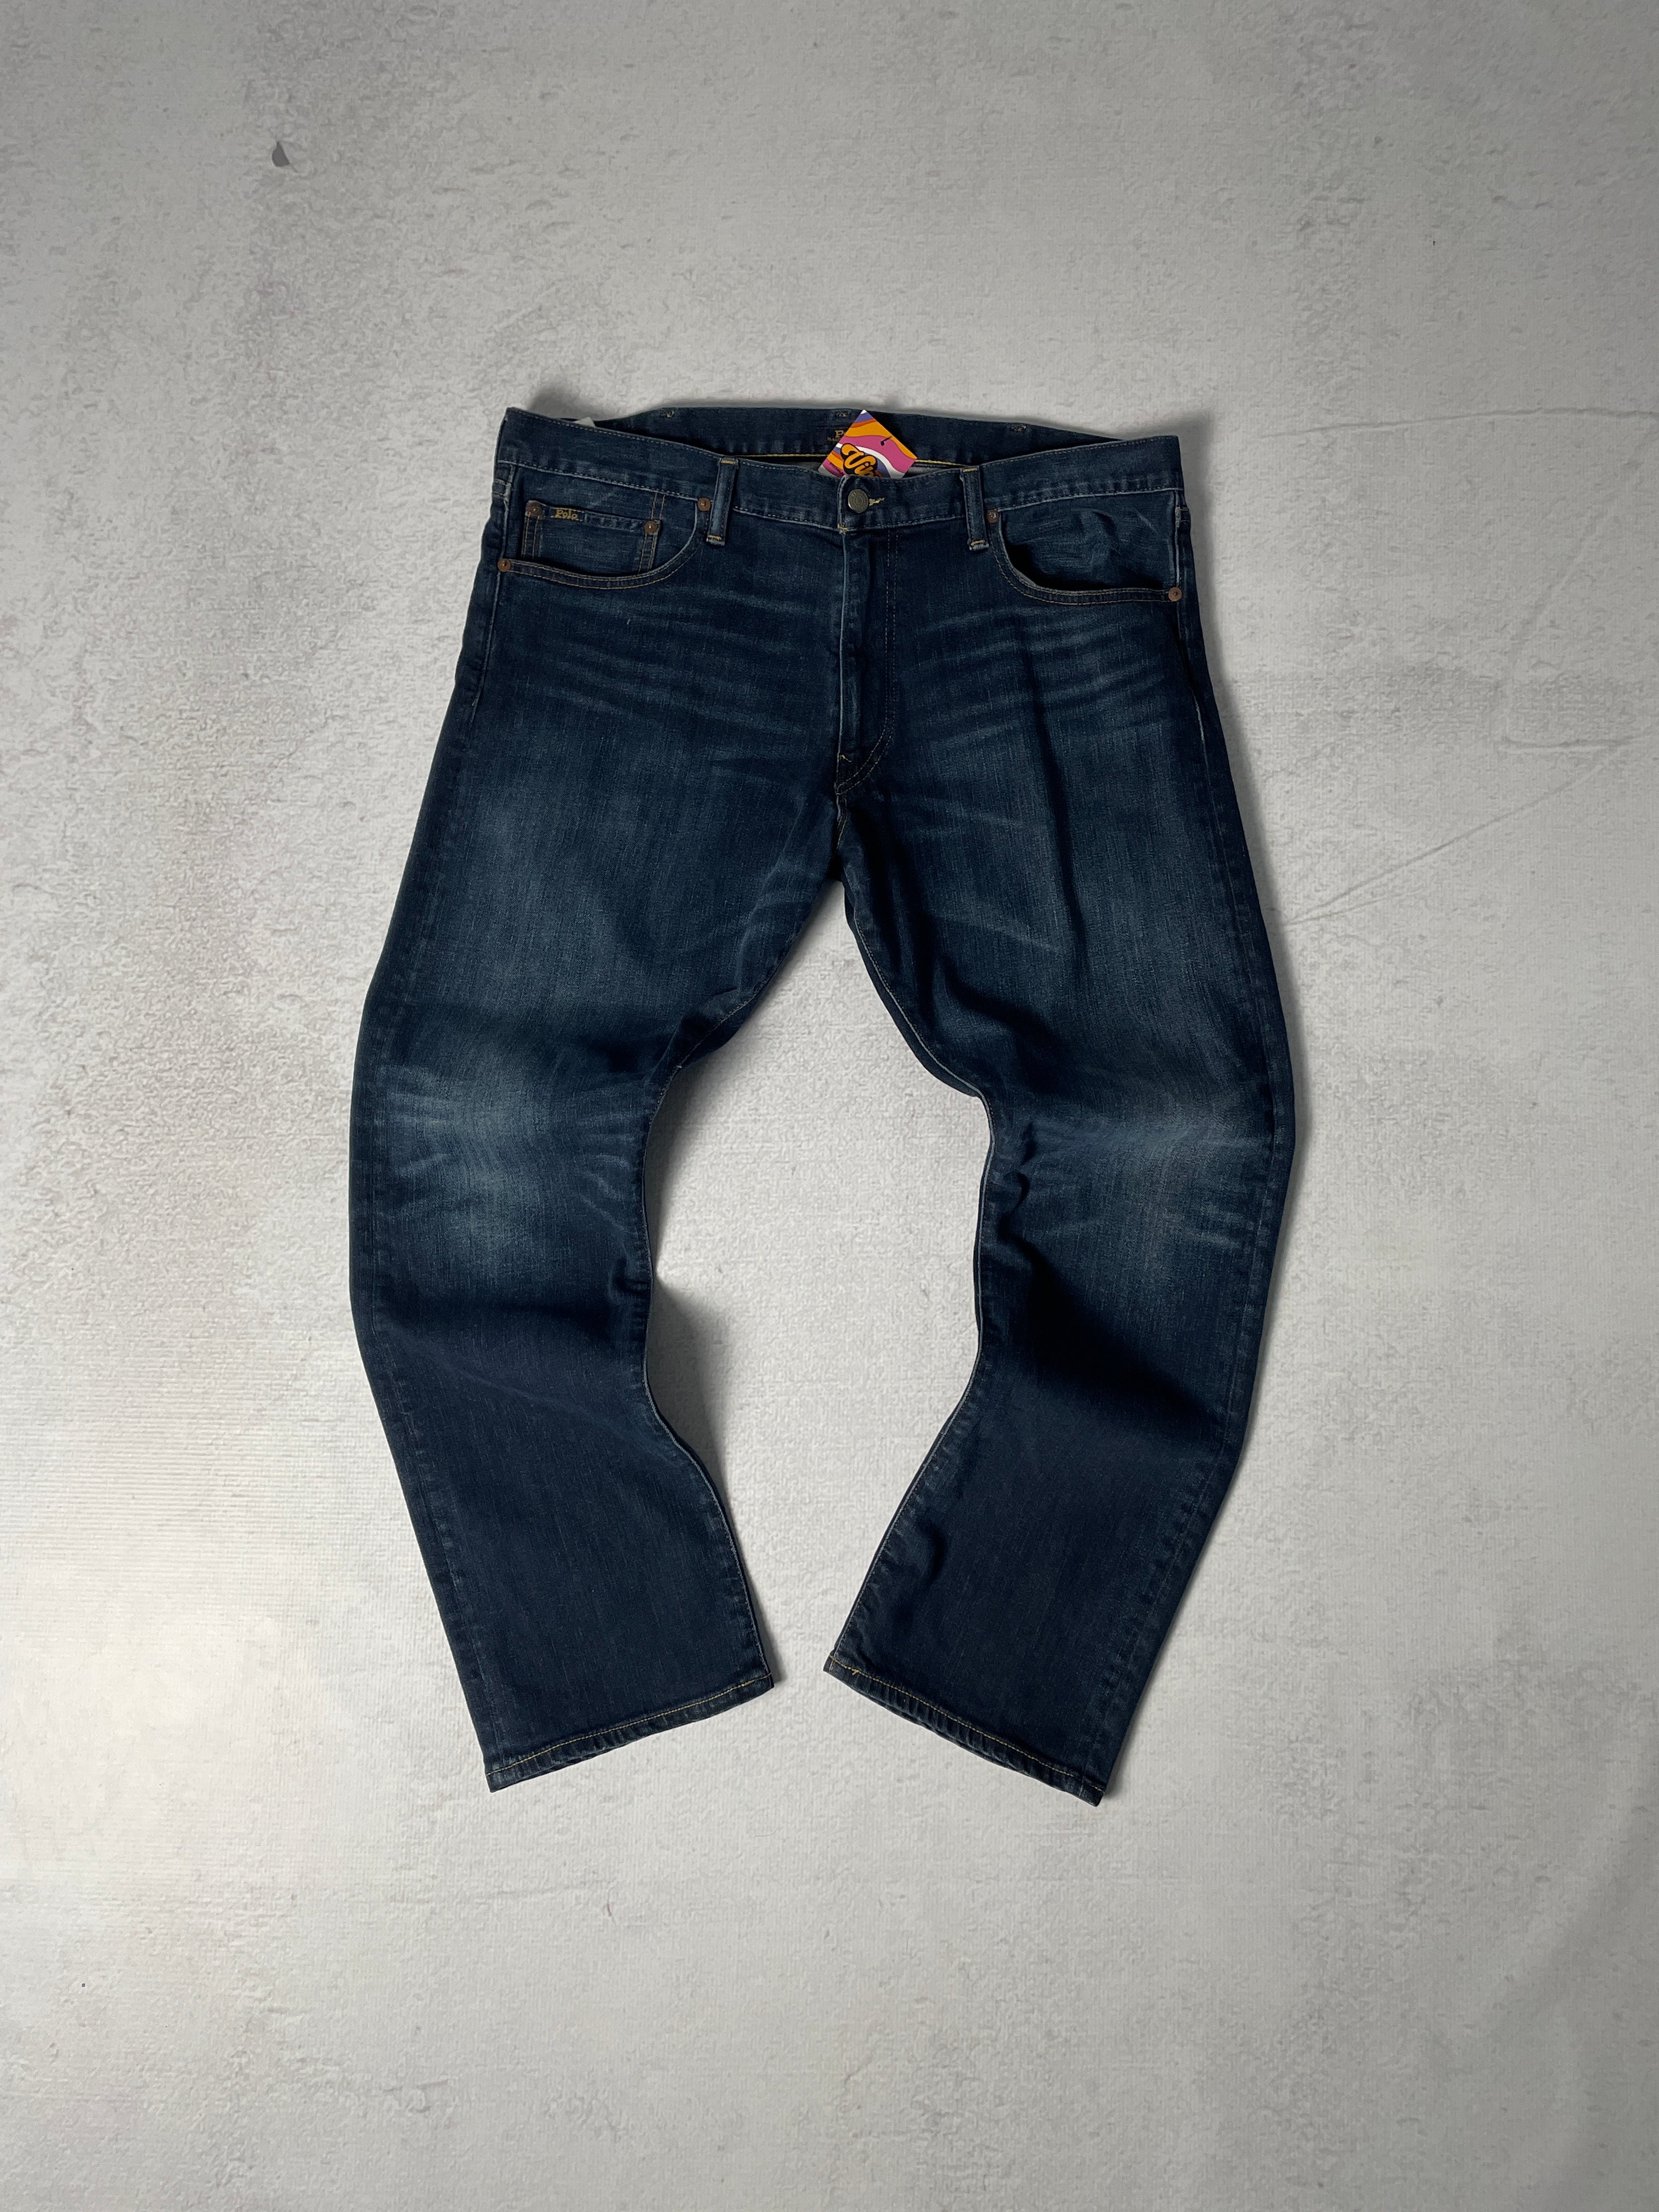 Polo Ralph Lauren Jeans - Men's 38 x 30